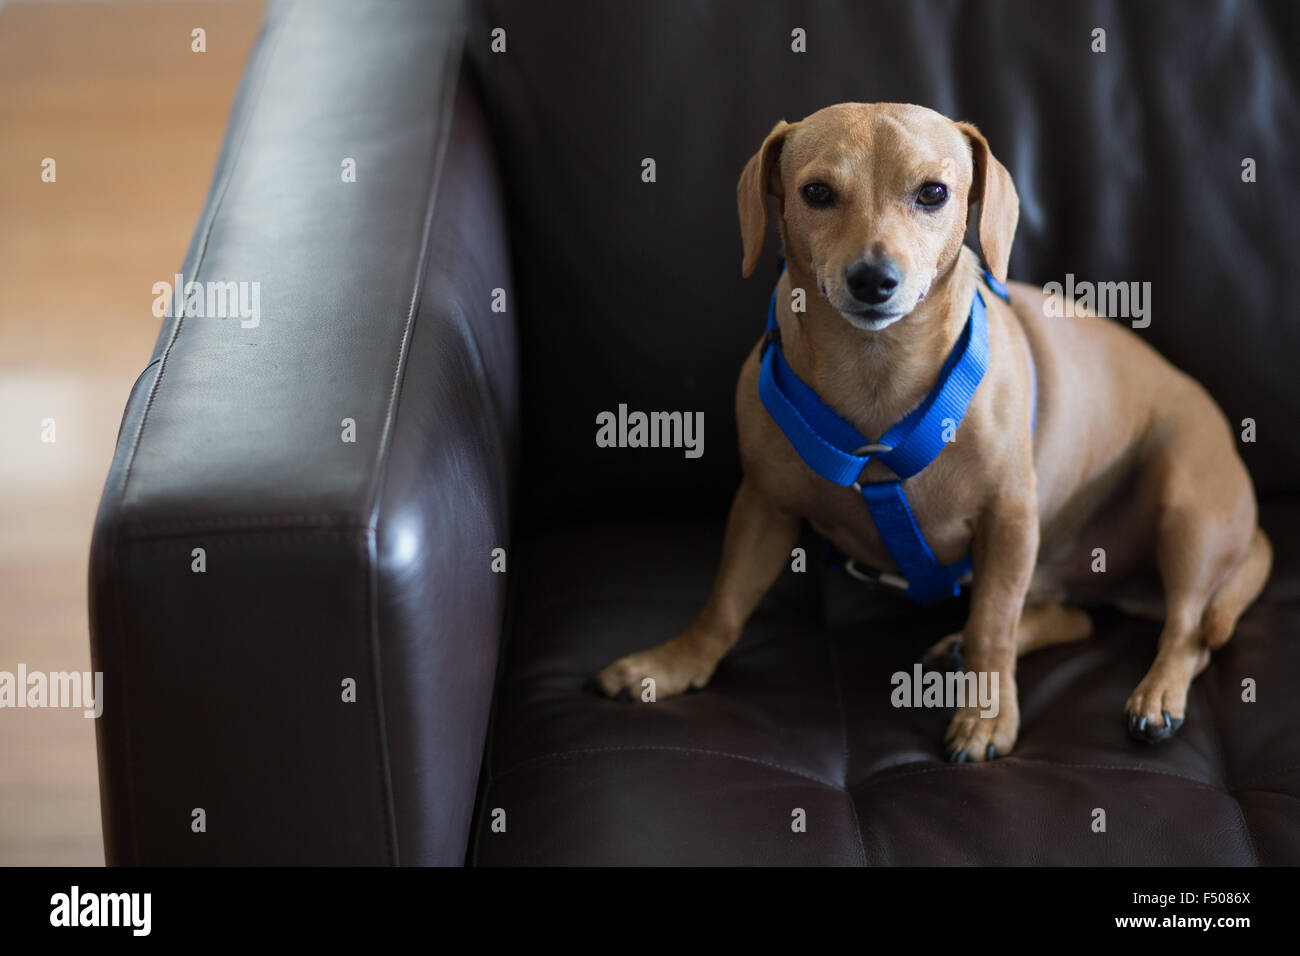 Eine niedliche Dackel Hund trägt ein blaues Geschirr sitzt auf einer couch Stockfoto